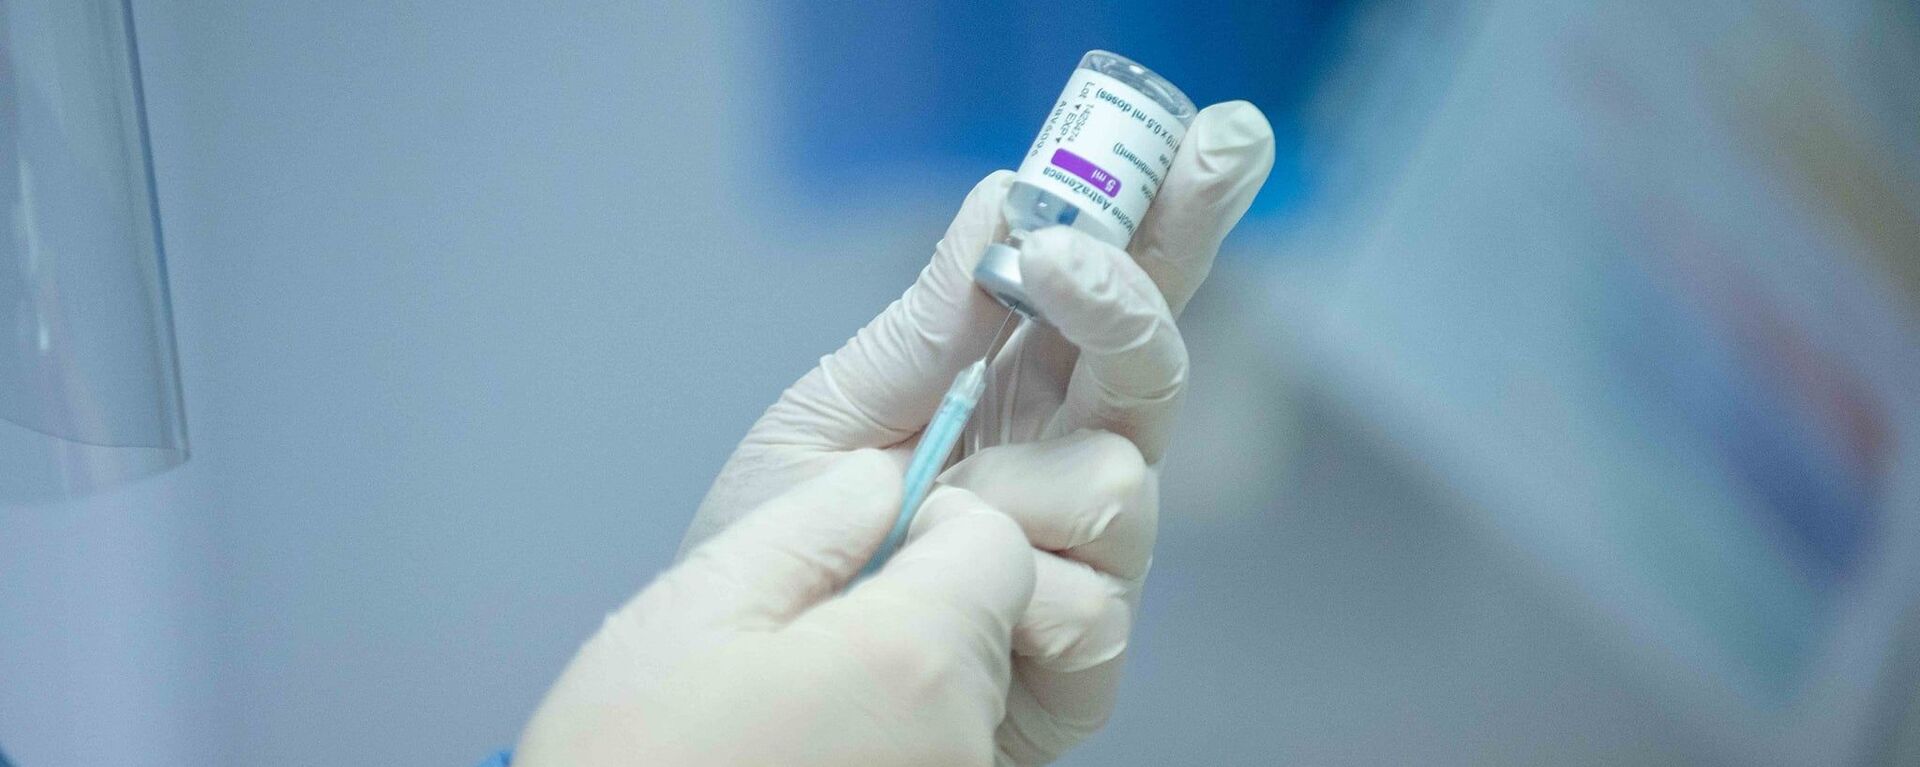 В Молдове стартовала вакцинация врачей от коронавируса - Sputnik Moldova, 1920, 02.03.2021